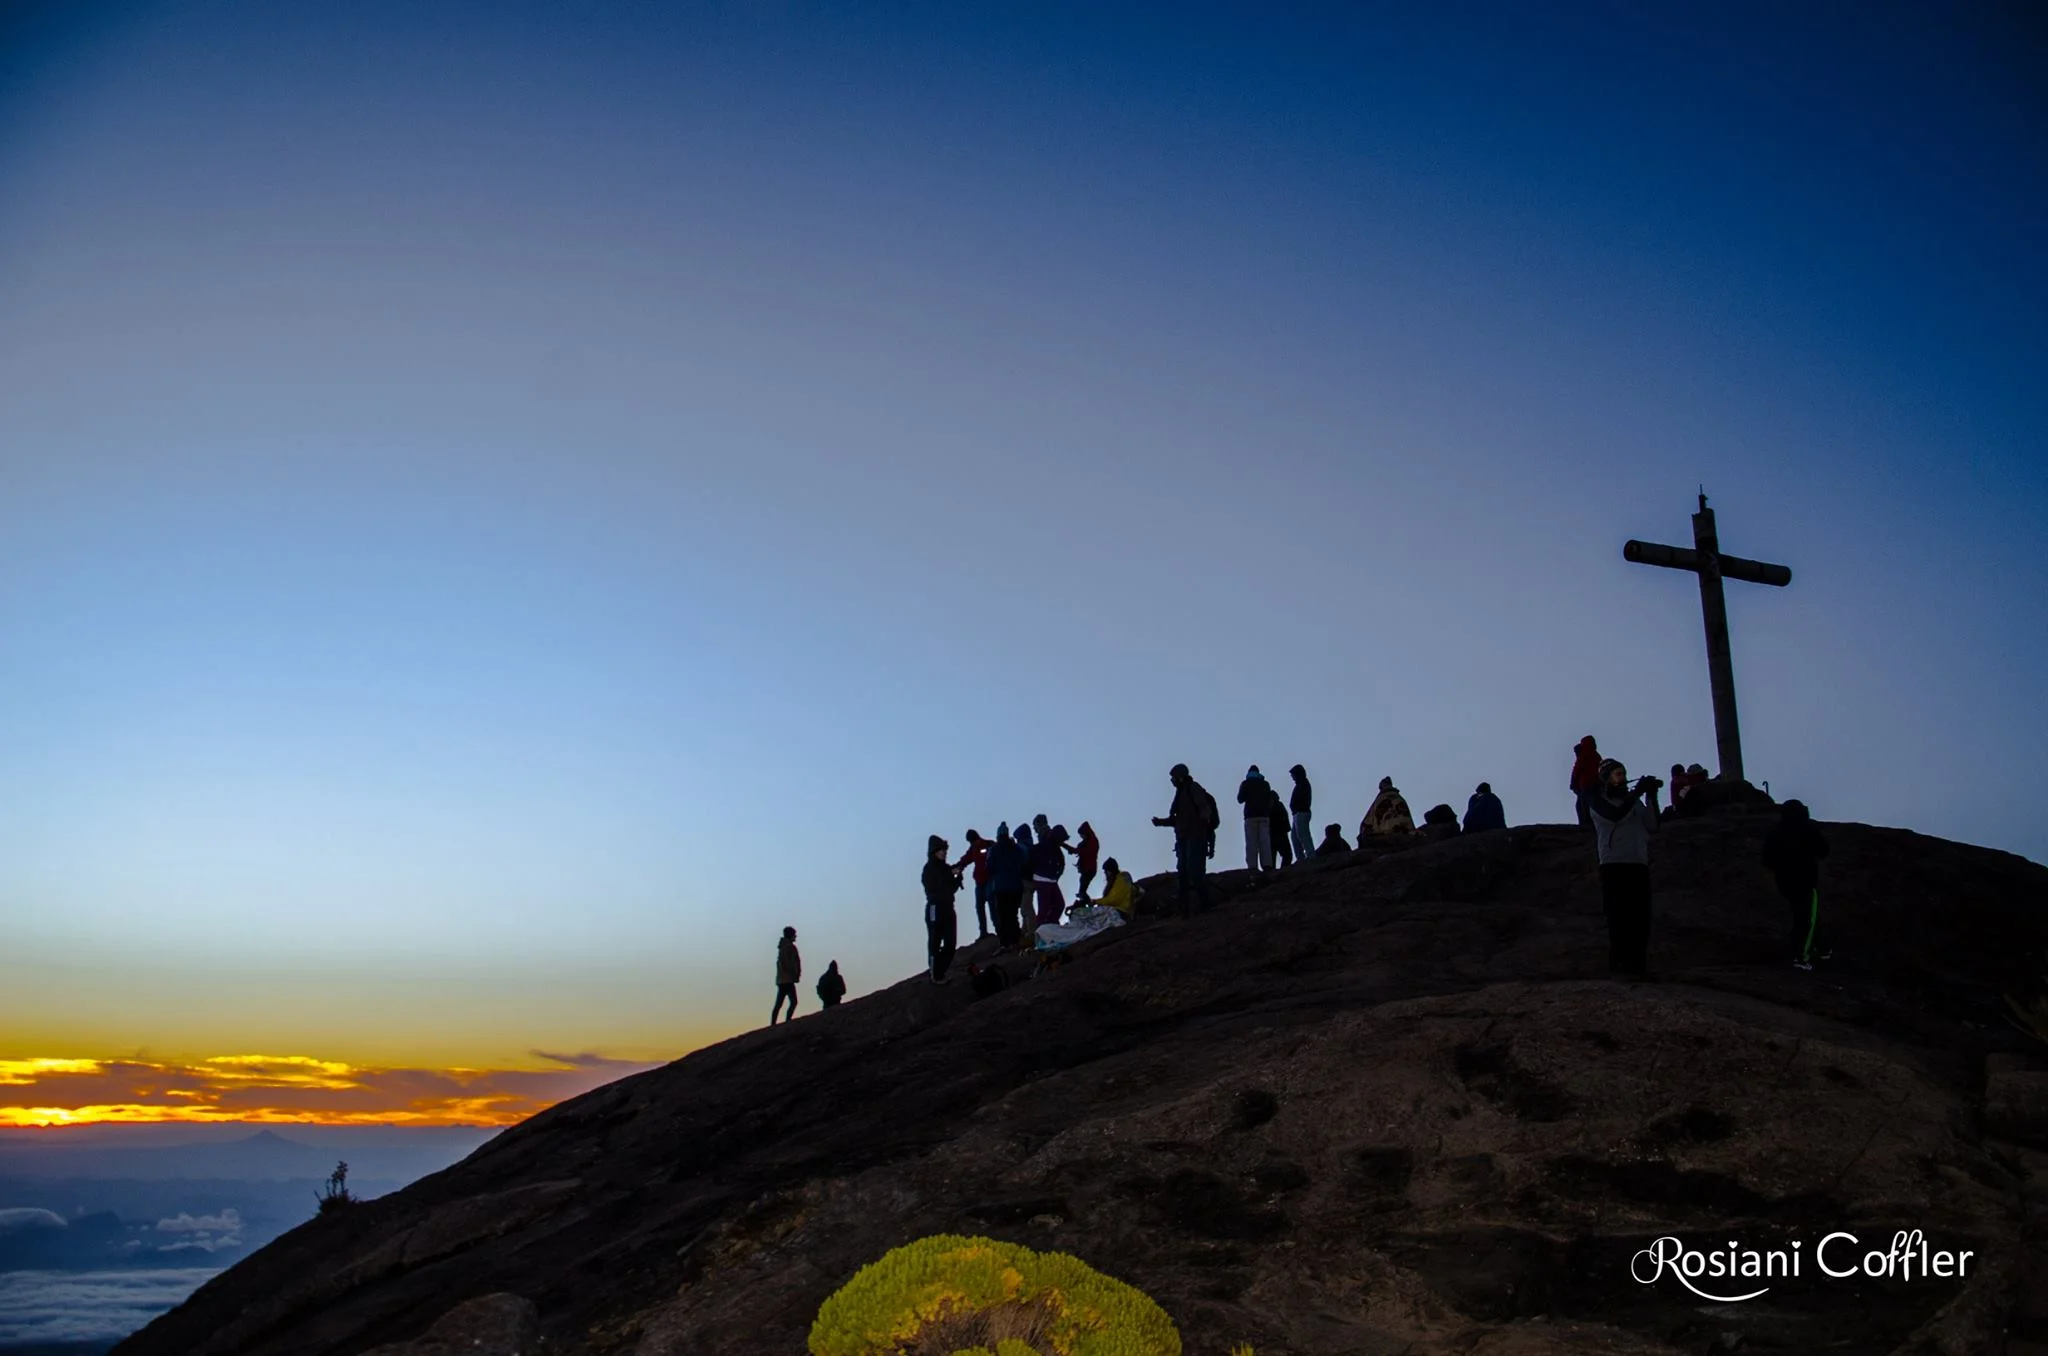 Pôr do sol no Pico da Bandeira, Caparaó-ES